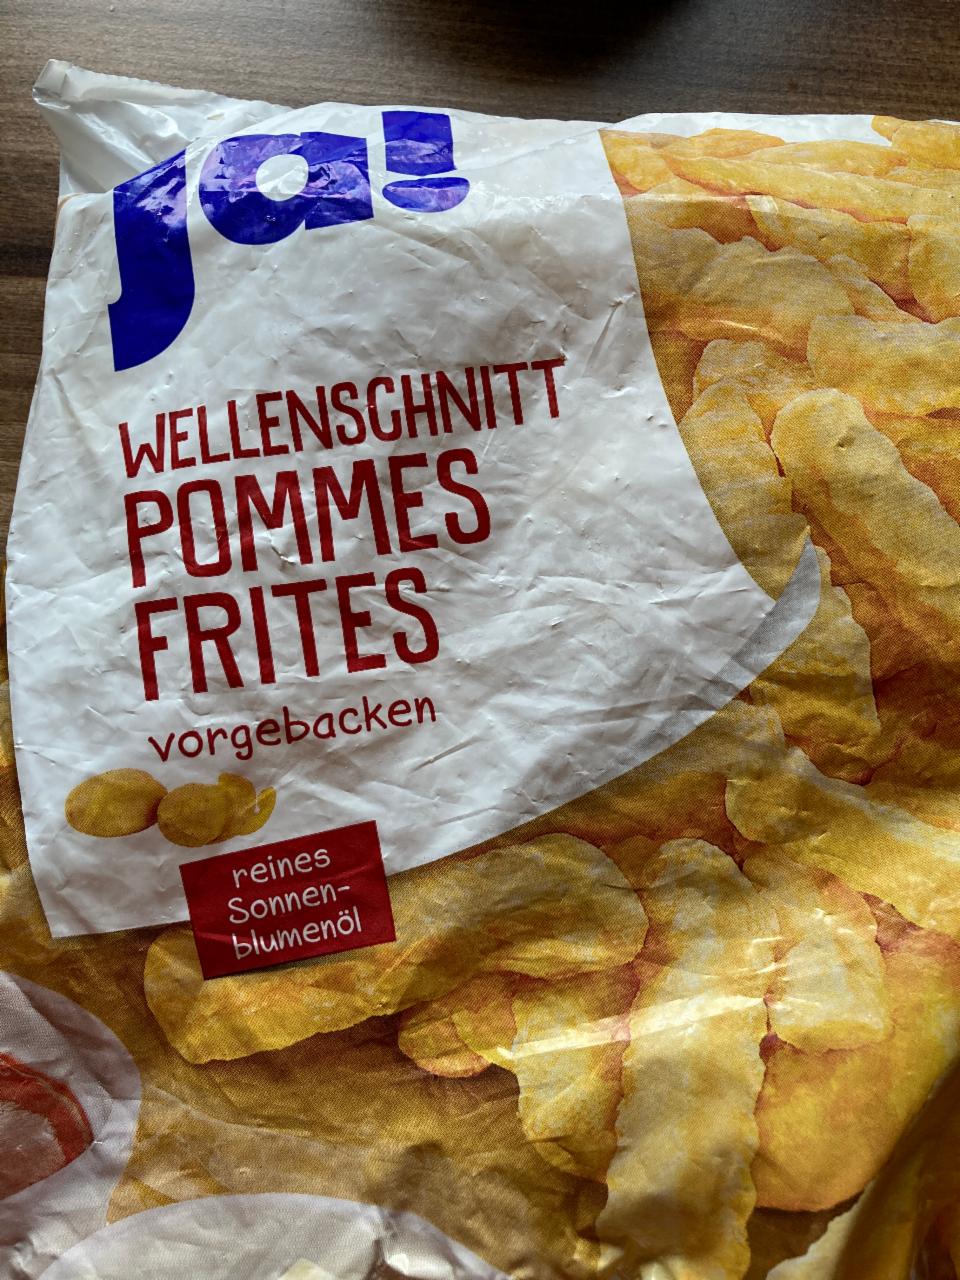 Fotografie - Wellenschnitt pommes frites Ja!